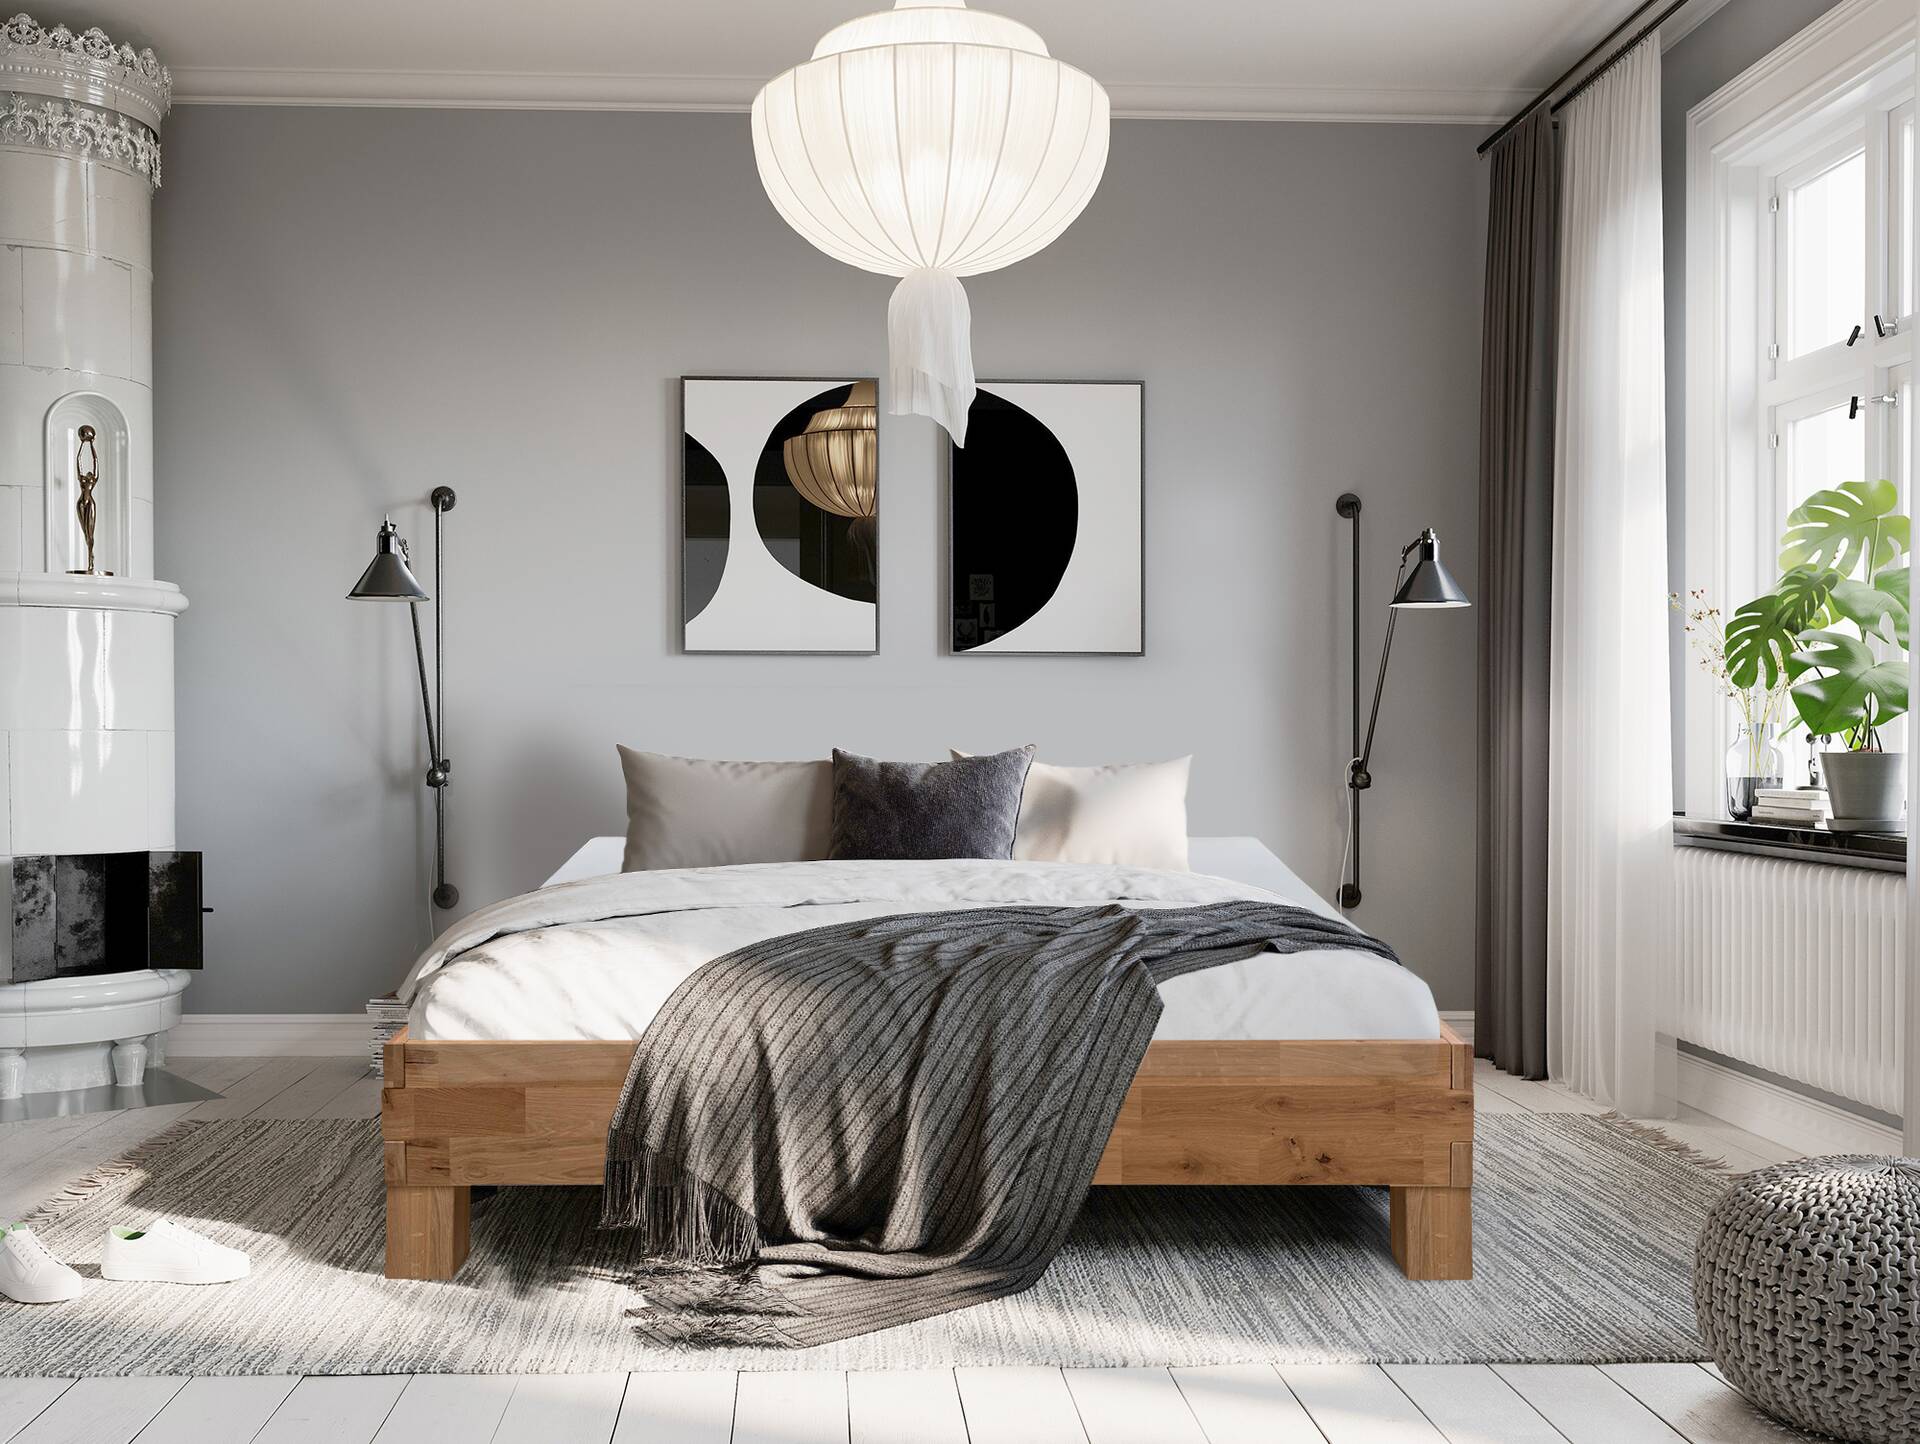 CORDINO 4-Fuß-Bett aus Eiche ohne Kopfteil, Material Massivholz 200 x 200 cm | Eiche unbehandelt | gehackt 